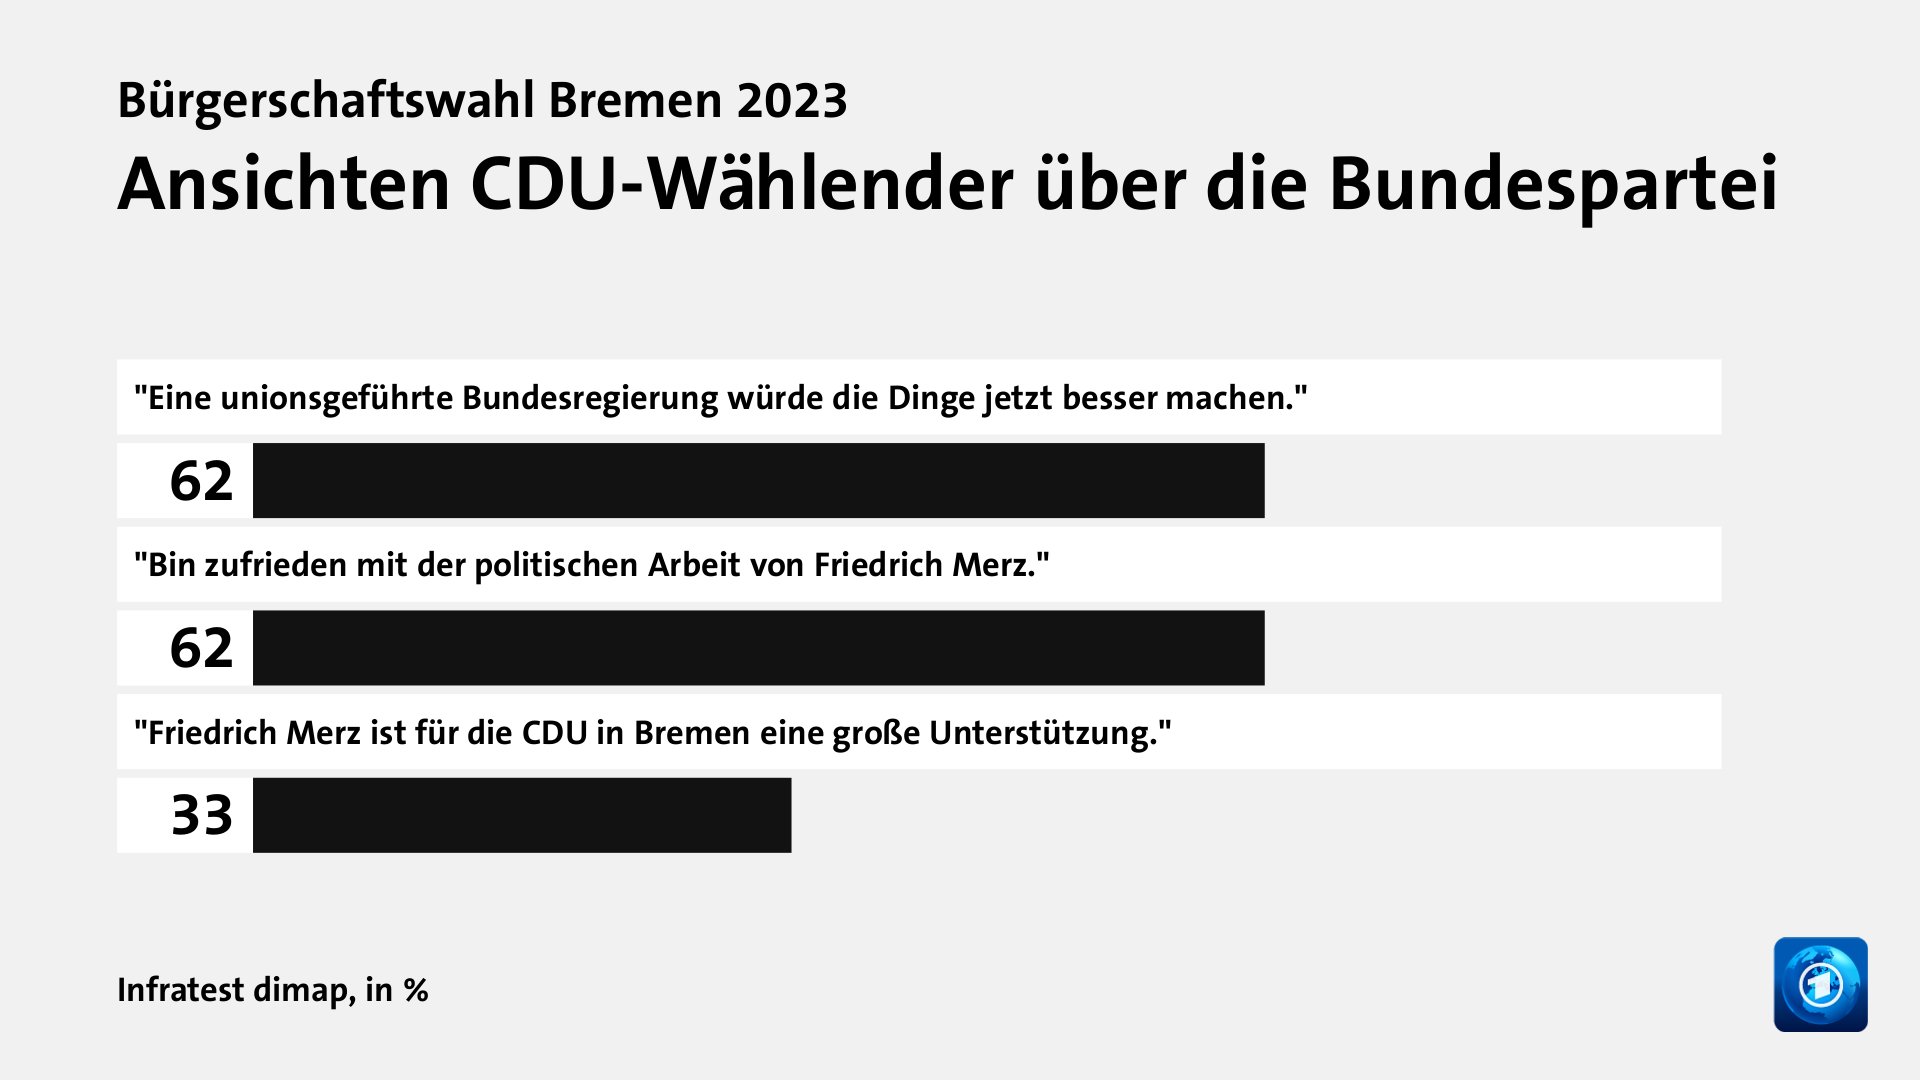 Ansichten CDU-Wählender über die Bundespartei, in %: 